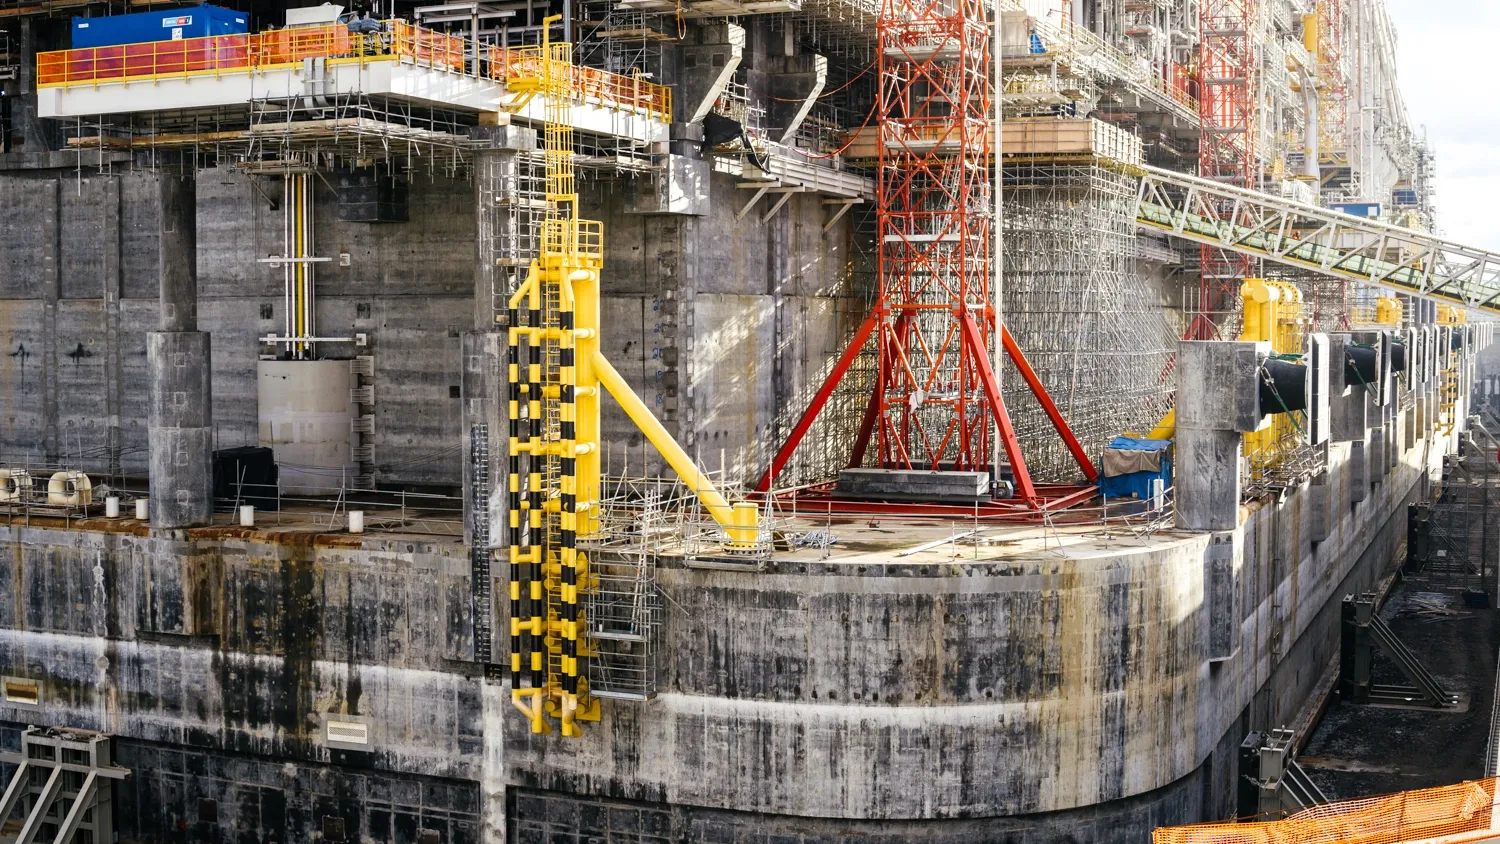 Основание гравитационного типа сделано из облегченного бетона. Вес составляет более 450 тысяч тонн. Внутри помещаются емкости для хранения СПГ и балластные отсеки. Фото: Юлия Чудинова / "Ямал-Медиа"